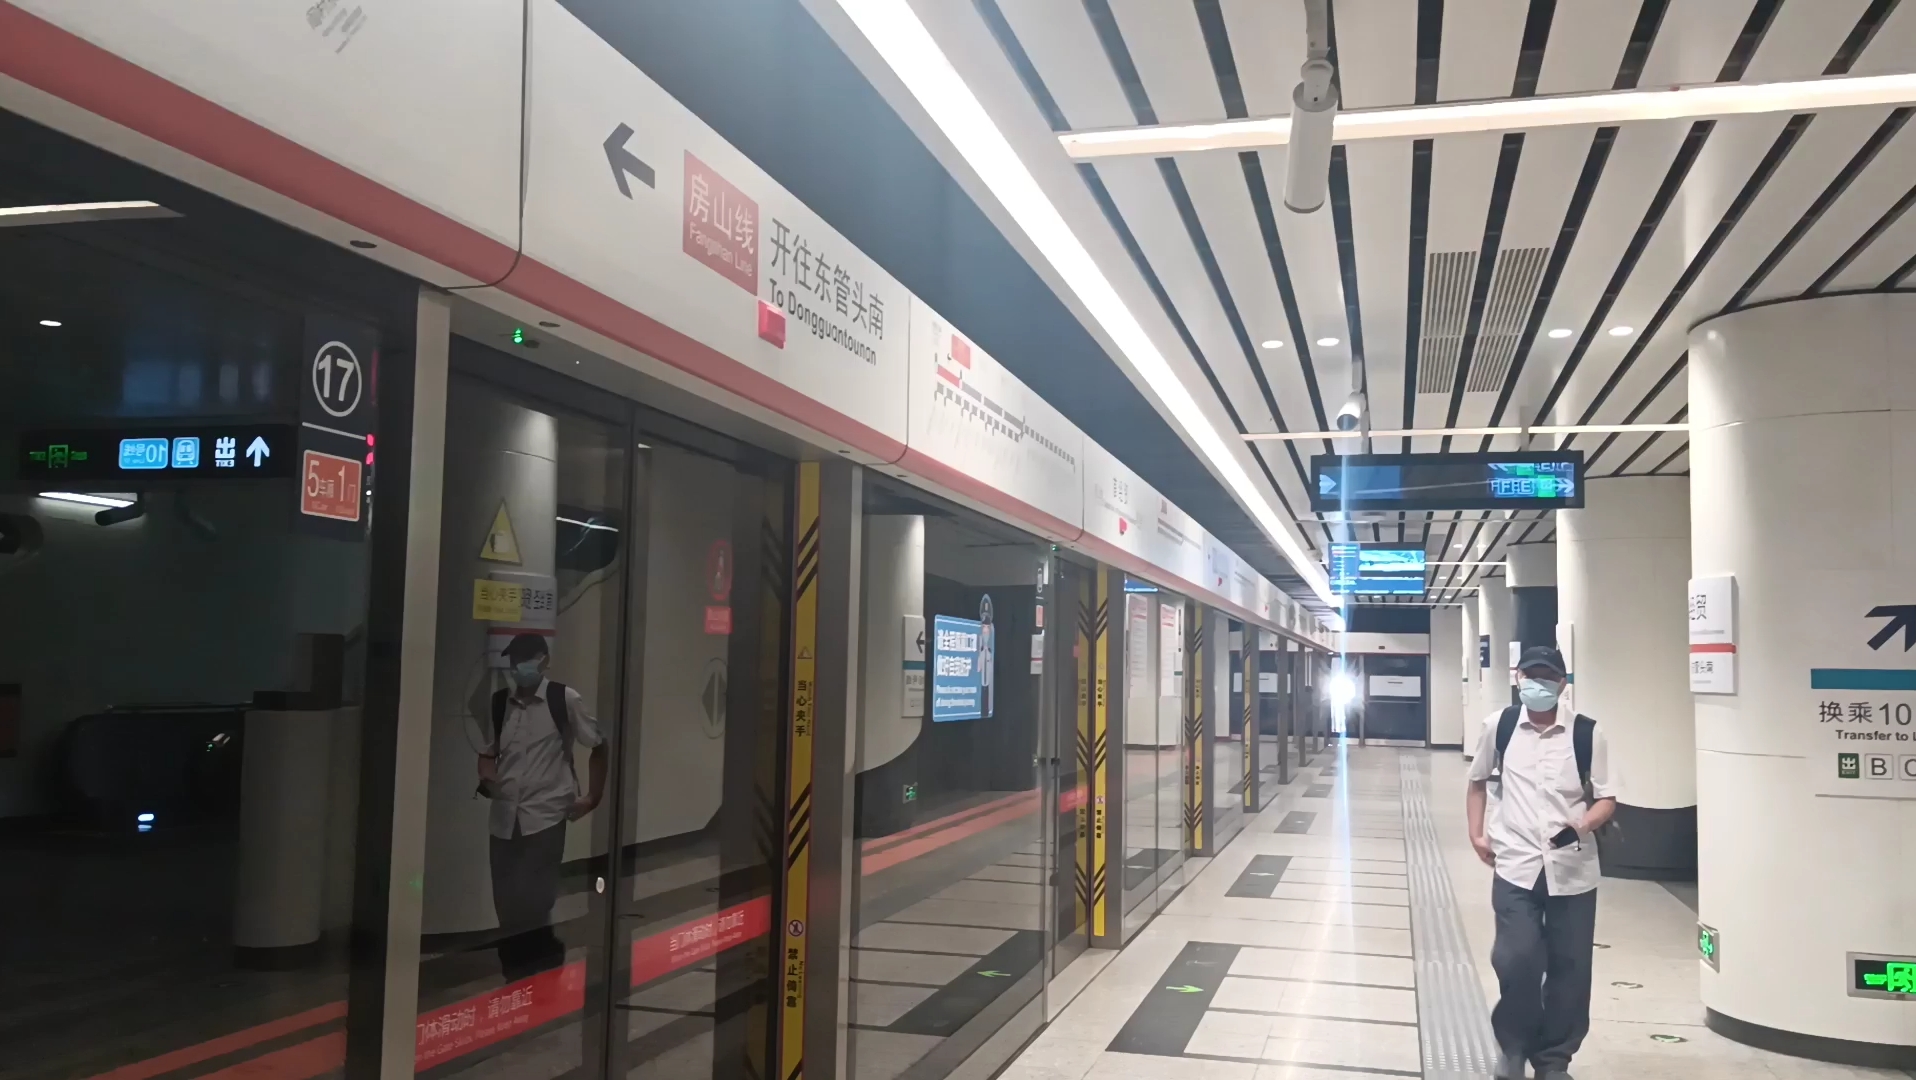 【北京地铁】房山线fs019号车往东管头南方向首经贸进站